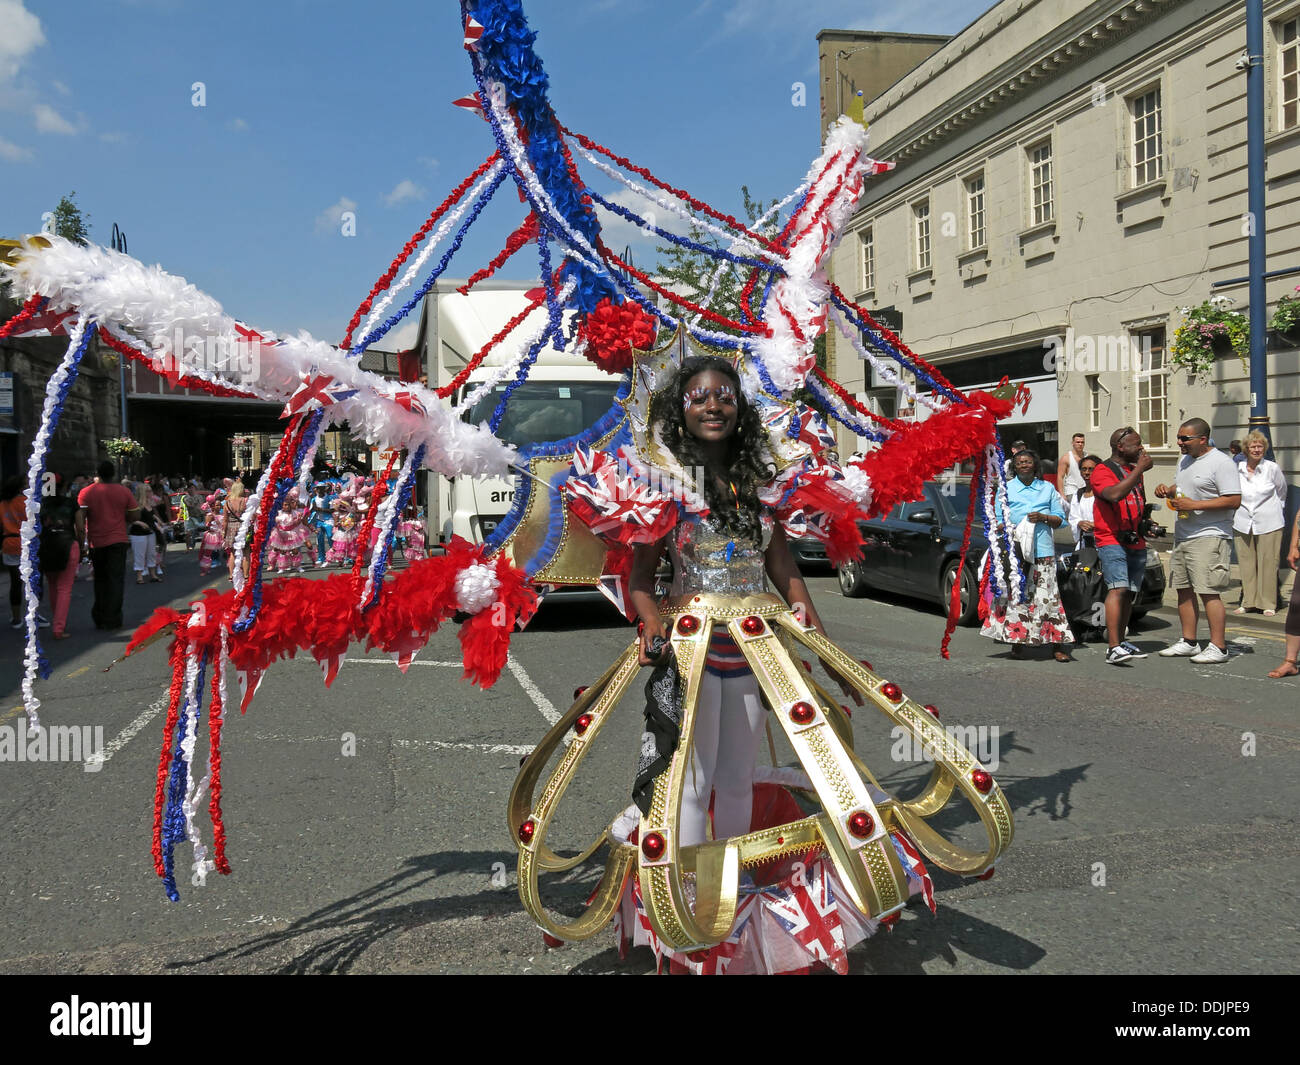 Danseuse en costume de Huddersfield Carnival parade 2013 fête de rue Africains des Caraïbes Banque D'Images